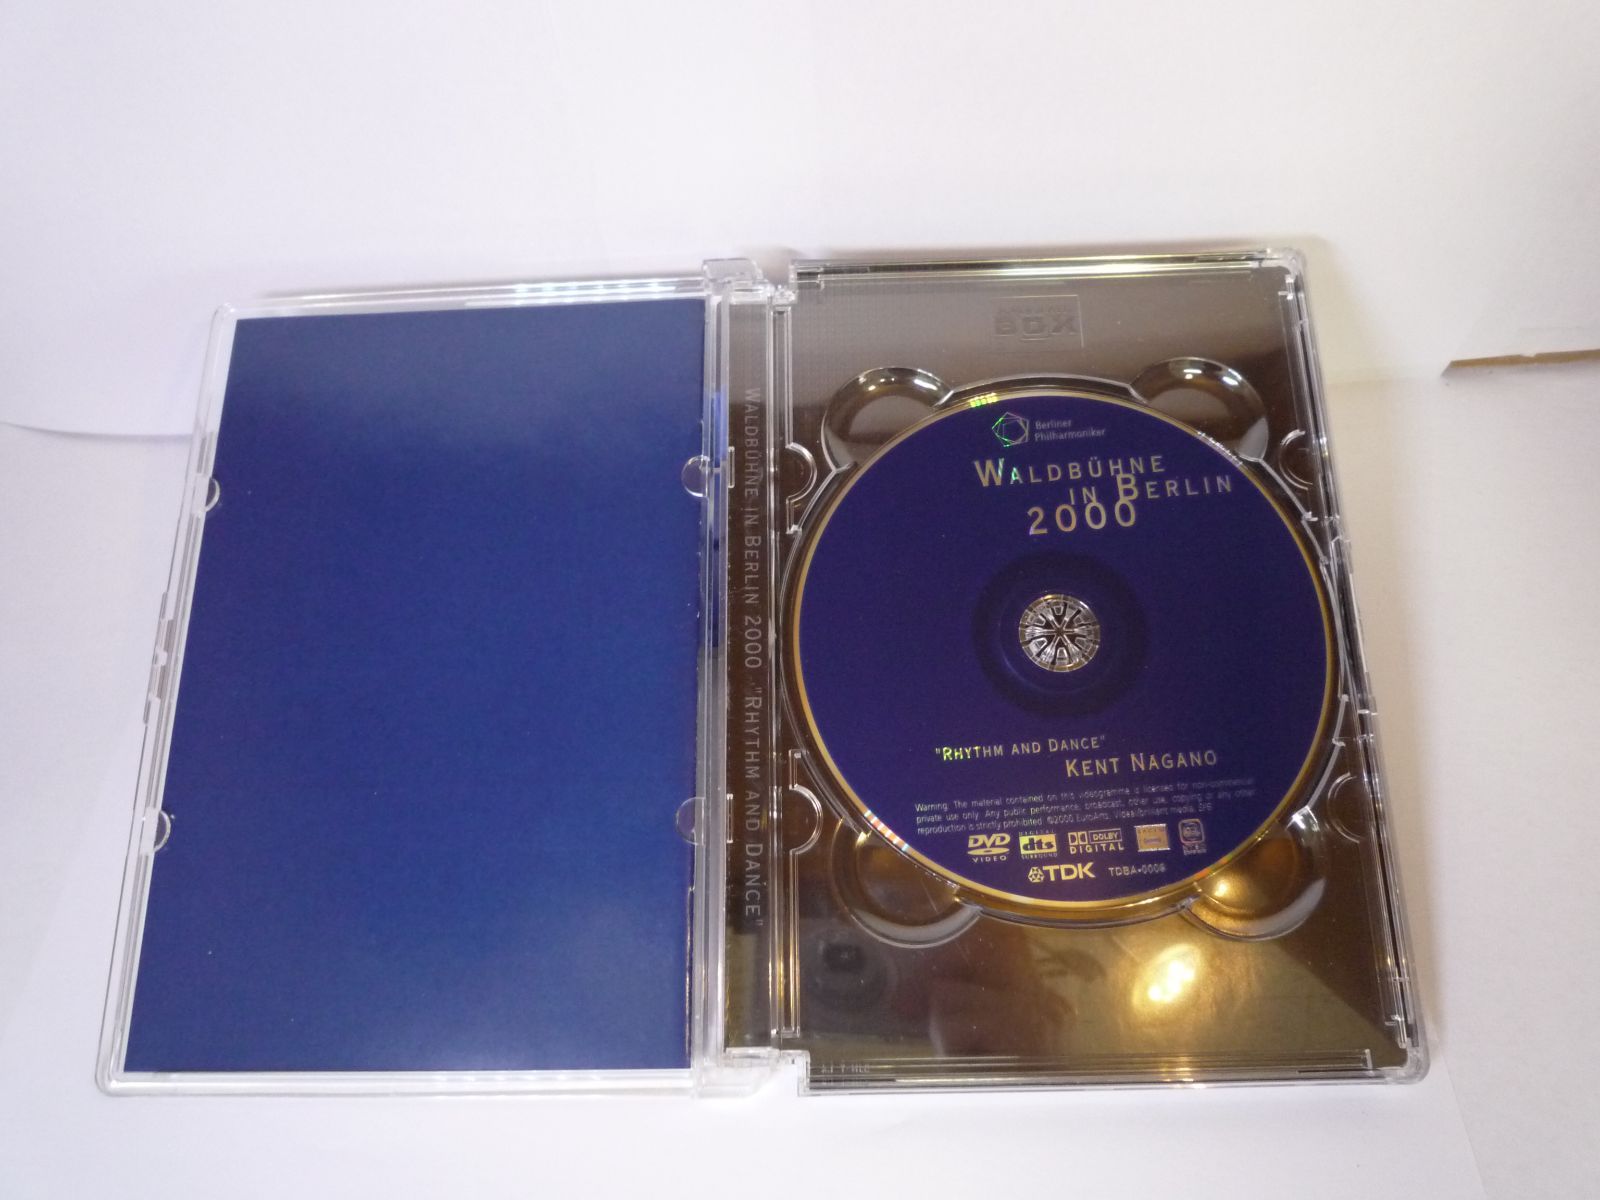 ヴァルトビューネ2000 リズムとダンスの夕べ [DVD] ケント・ナガノ(指揮)／ベルリン・フィルハーモニー管弦楽団(演奏) 他  4988026815289 - メルカリ